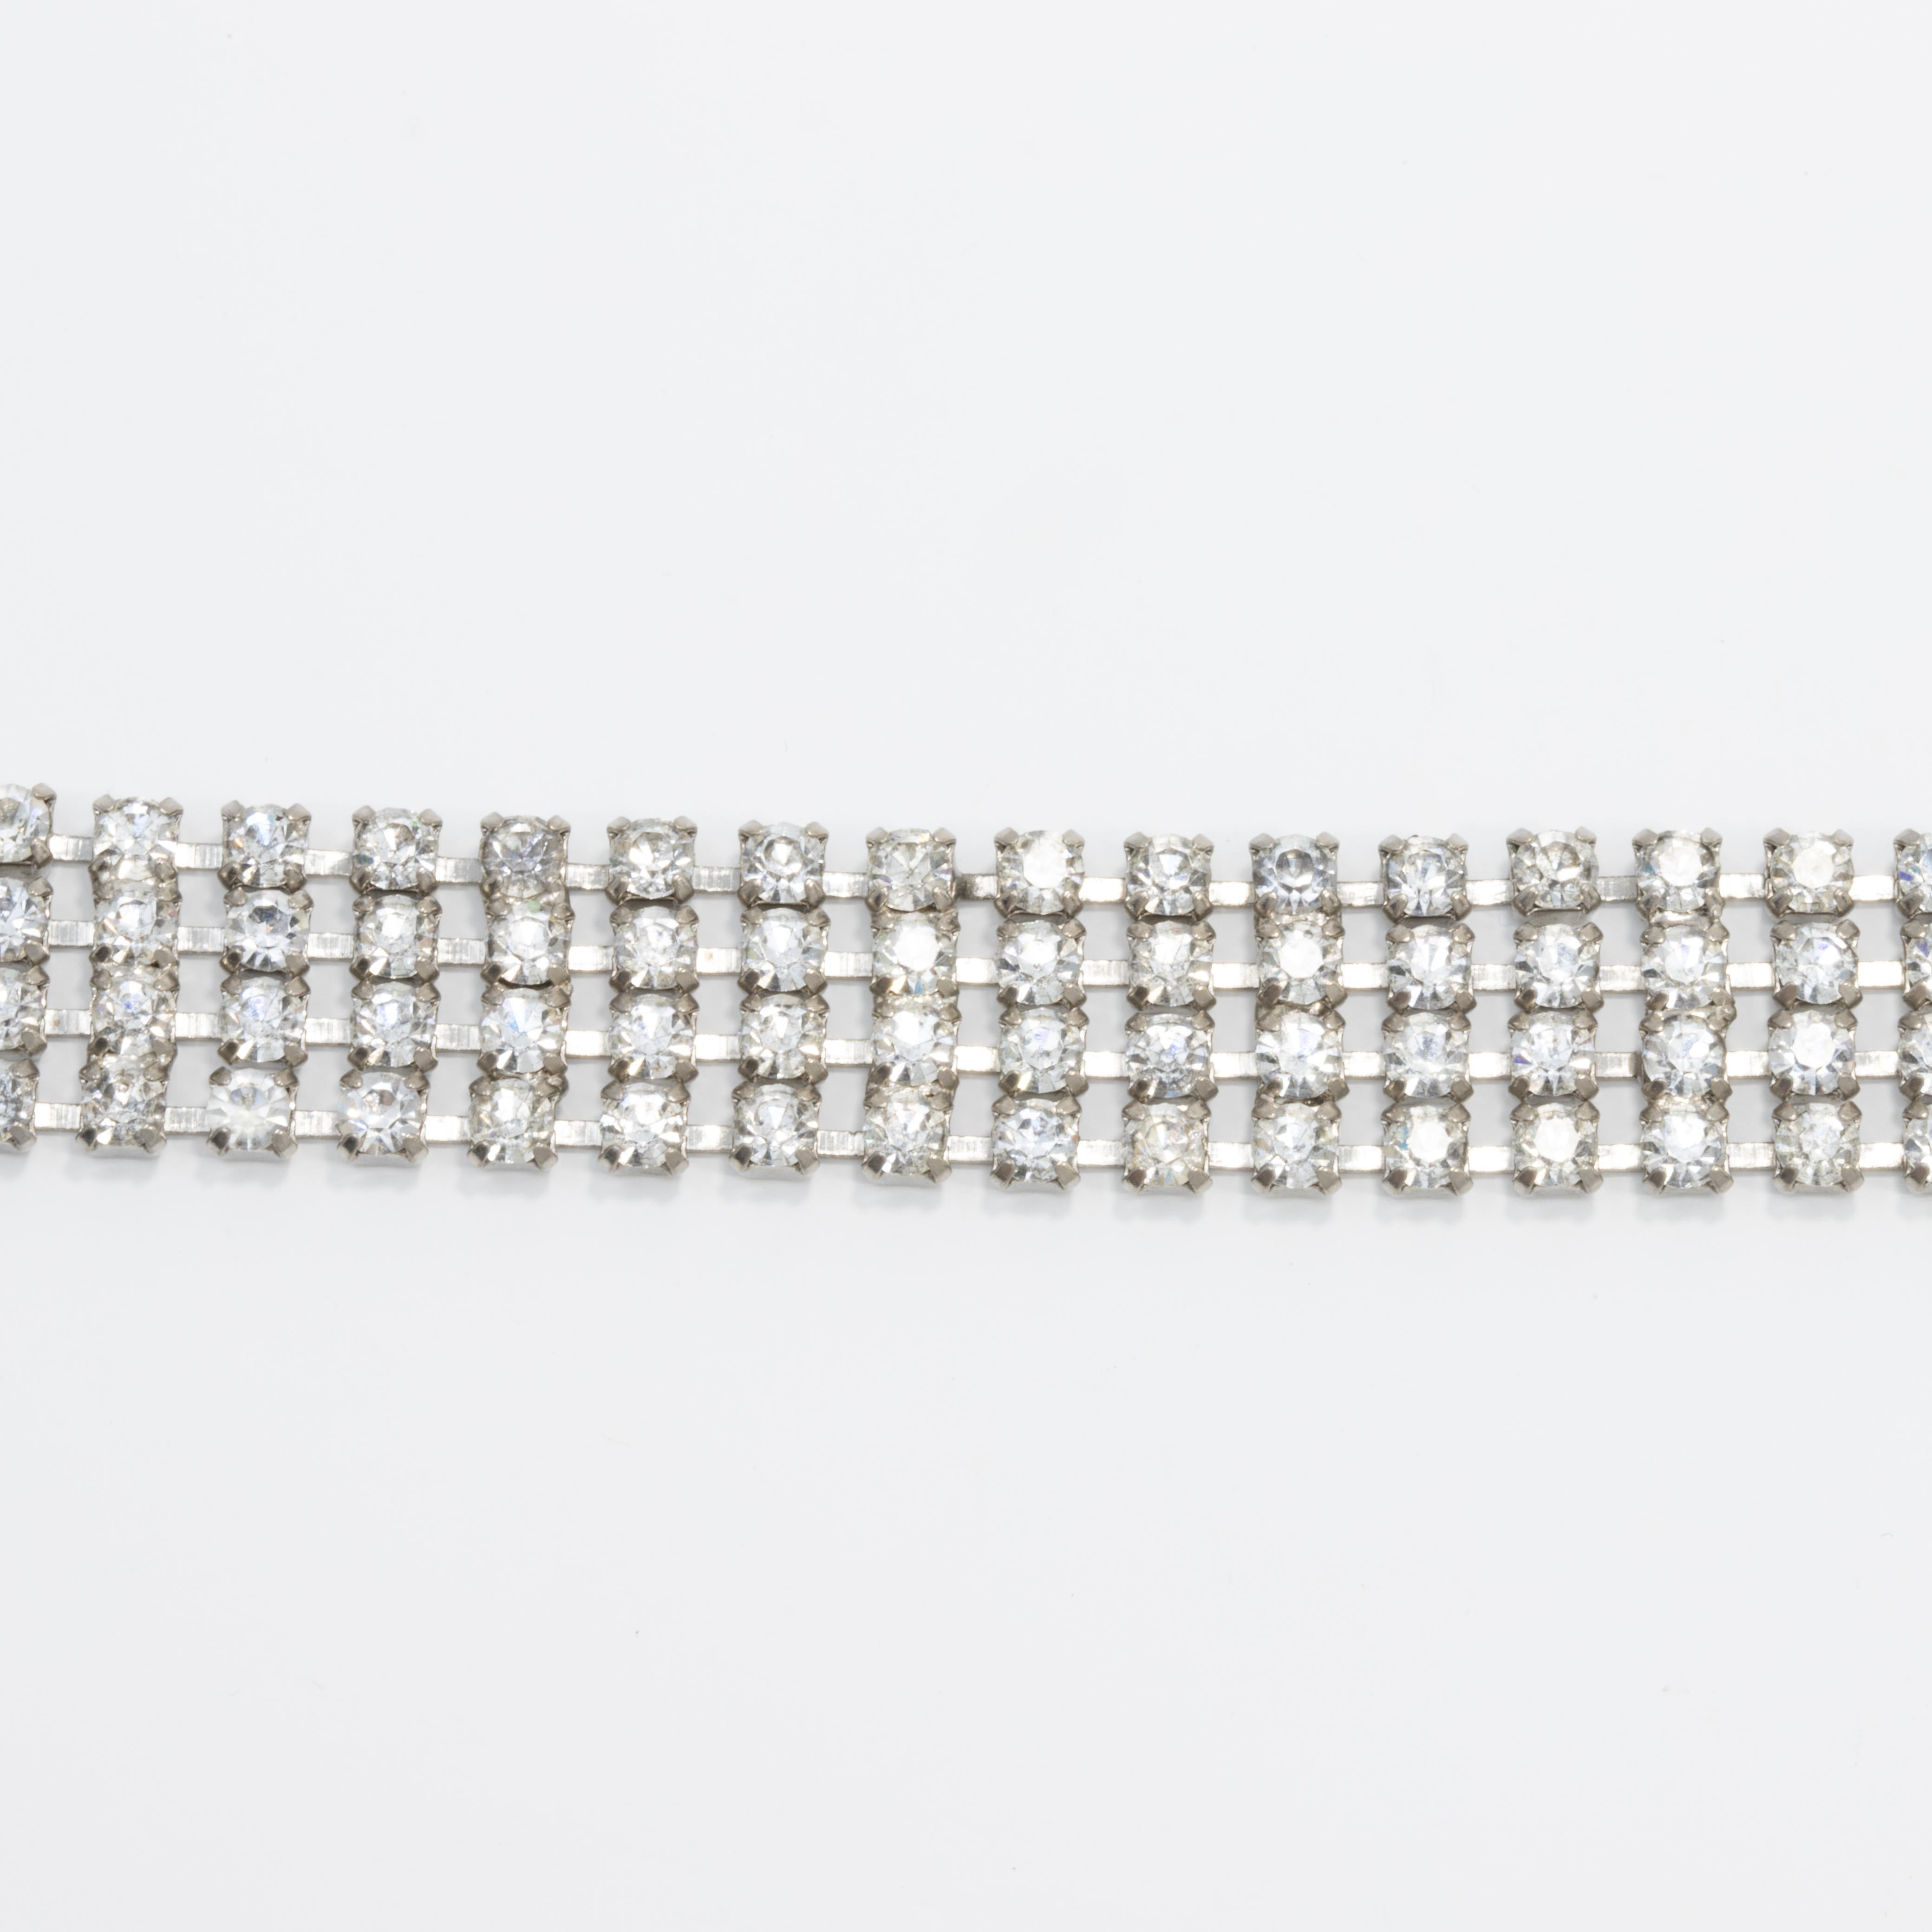 Art-Déco-Armband aus dem frühen 19. Jahrhundert mit vier Reihen von miteinander verbundenen Kristallen, die mit einem Faltverschluss geschlossen werden.

Silber-Ton.